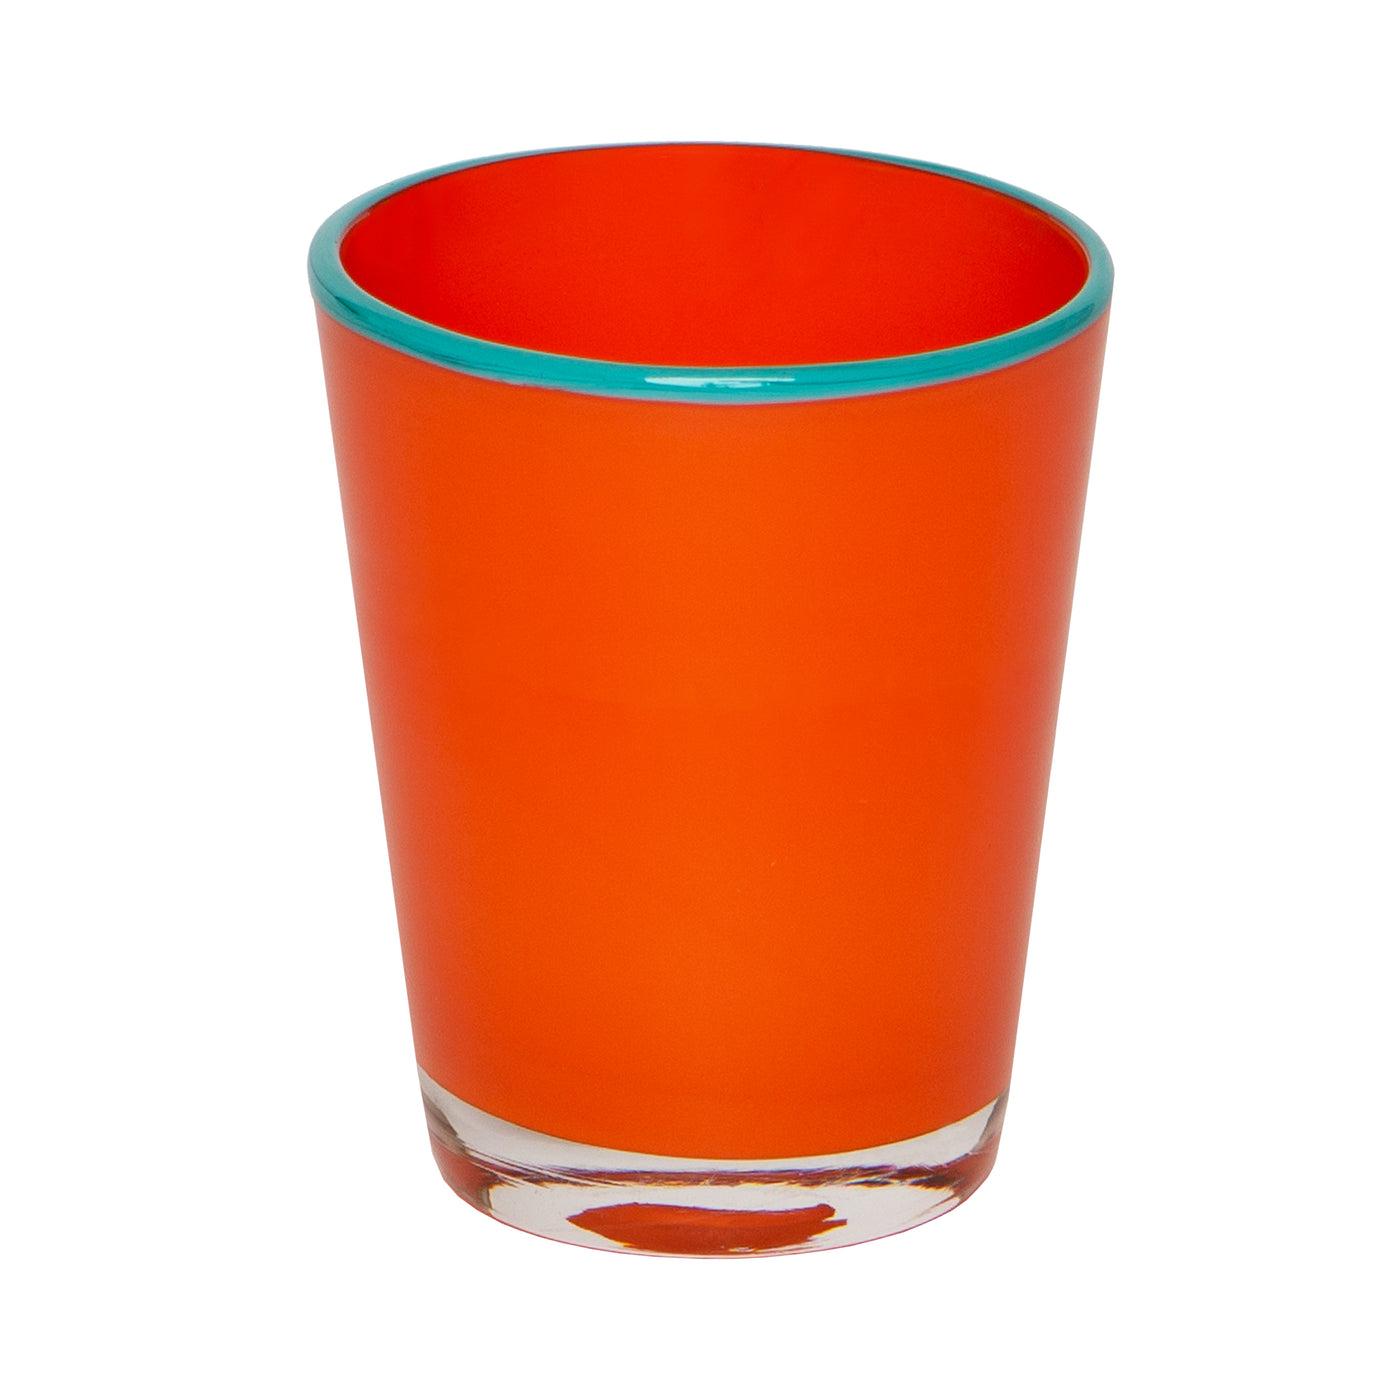 Summer Glass Orange & Turquoise 9oz, Set of 4